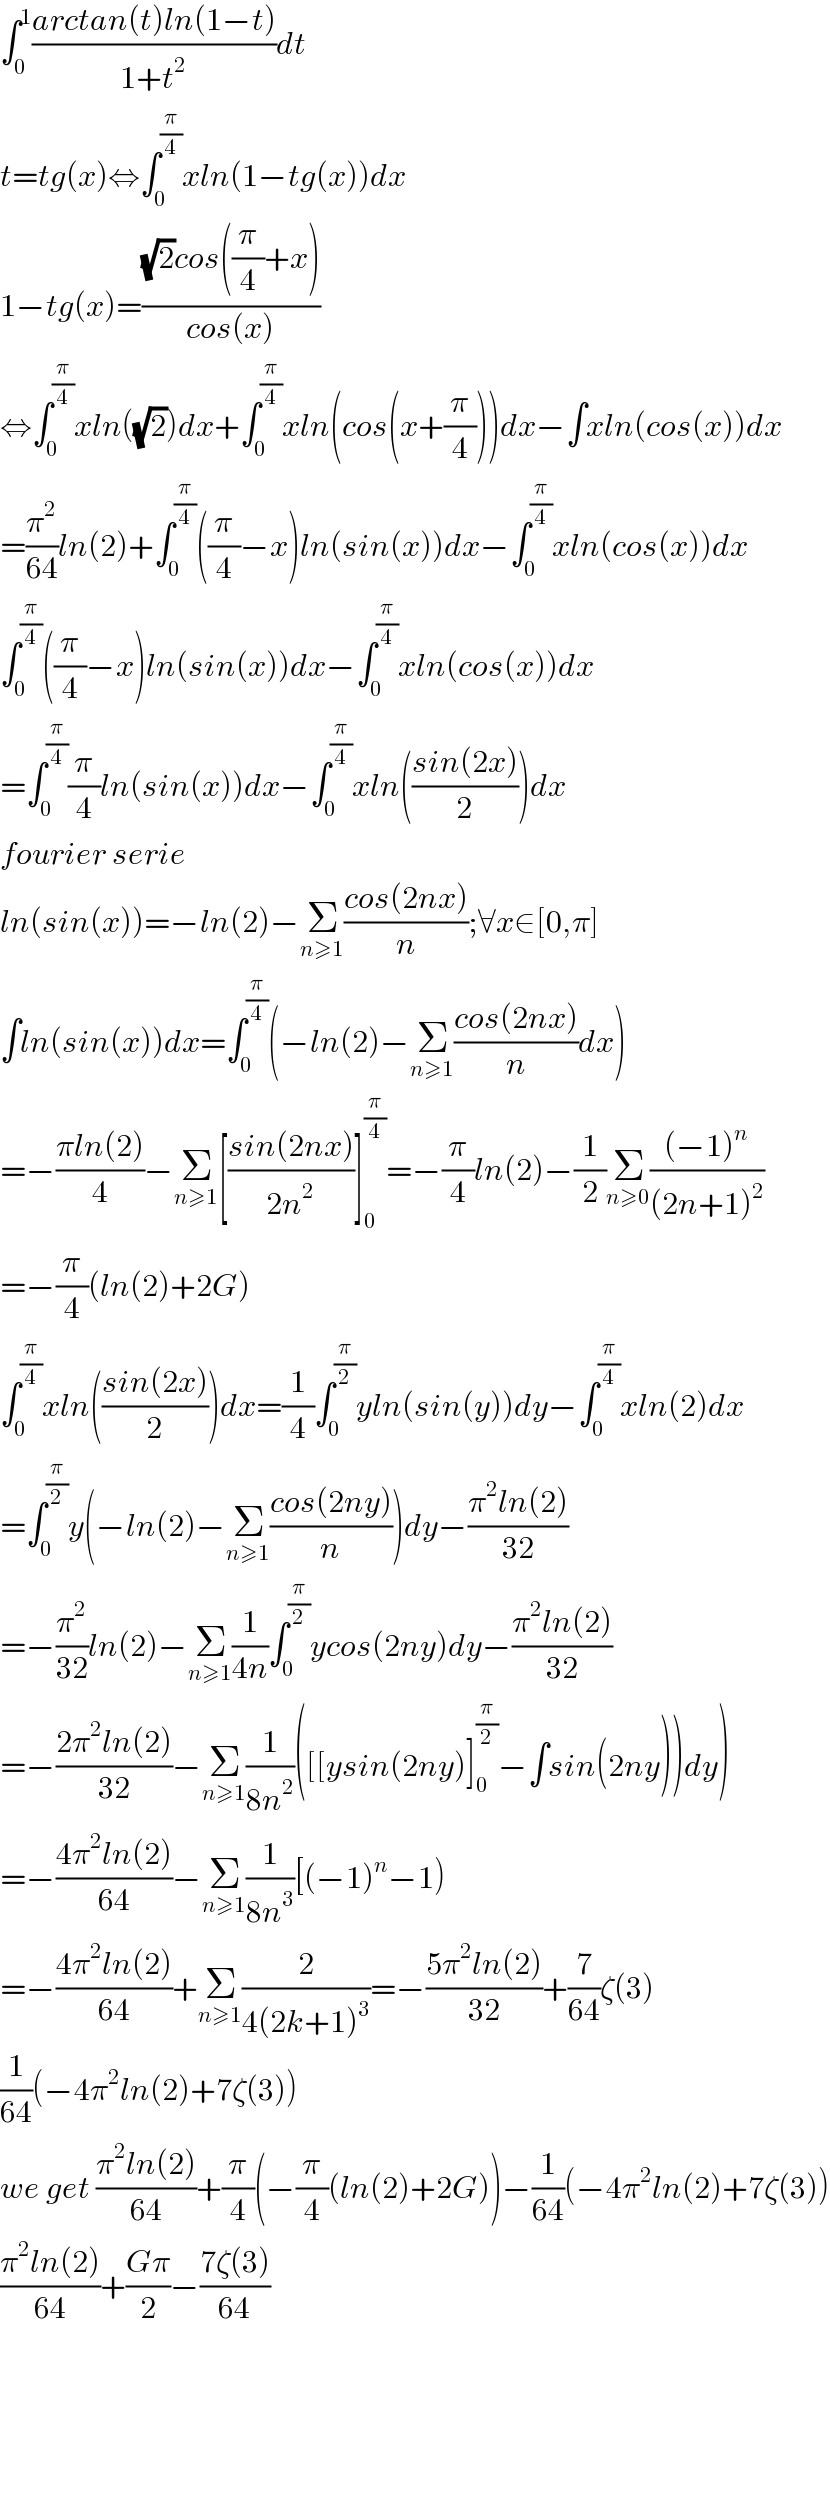 ∫_0 ^1 ((arctan(t)ln(1−t))/(1+t^2 ))dt  t=tg(x)⇔∫_0 ^(π/4) xln(1−tg(x))dx  1−tg(x)=(((√2)cos((π/4)+x))/(cos(x)))  ⇔∫_0 ^(π/4) xln((√2))dx+∫_0 ^(π/4) xln(cos(x+(π/4)))dx−∫xln(cos(x))dx  =(π^2 /(64))ln(2)+∫_0 ^(π/4) ((π/4)−x)ln(sin(x))dx−∫_0 ^(π/4) xln(cos(x))dx  ∫_0 ^(π/4) ((π/4)−x)ln(sin(x))dx−∫_0 ^(π/4) xln(cos(x))dx  =∫_0 ^(π/4) (π/4)ln(sin(x))dx−∫_0 ^(π/4) xln(((sin(2x))/2))dx  fourier serie  ln(sin(x))=−ln(2)−Σ_(n≥1) ((cos(2nx))/n);∀x∈[0,π]  ∫ln(sin(x))dx=∫_0 ^(π/4) (−ln(2)−Σ_(n≥1) ((cos(2nx))/n)dx)  =−((πln(2))/4)−Σ_(n≥1) [((sin(2nx))/(2n^2 ))]_0 ^(π/4) =−(π/4)ln(2)−(1/2)Σ_(n≥0) (((−1)^n )/((2n+1)^2 ))  =−(π/4)(ln(2)+2G)  ∫_0 ^(π/4) xln(((sin(2x))/2))dx=(1/4)∫_0 ^(π/2) yln(sin(y))dy−∫_0 ^(π/4) xln(2)dx  =∫_0 ^(π/2) y(−ln(2)−Σ_(n≥1) ((cos(2ny))/n))dy−((π^2 ln(2))/(32))  =−(π^2 /(32))ln(2)−Σ_(n≥1) (1/(4n))∫_0 ^(π/2) ycos(2ny)dy−((π^2 ln(2))/(32))  =−((2π^2 ln(2))/(32))−Σ_(n≥1) (1/(8n^2 ))([[ysin(2ny)]_0 ^(π/2) −∫sin(2ny))dy)  =−((4π^2 ln(2))/(64))−Σ_(n≥1) (1/(8n^3 ))[(−1)^n −1)  =−((4π^2 ln(2))/(64))+Σ_(n≥1) (2/(4(2k+1)^3 ))=−((5π^2 ln(2))/(32))+(7/(64))ζ(3)  (1/(64))(−4π^2 ln(2)+7ζ(3))  we get ((π^2 ln(2))/(64))+(π/4)(−(π/4)(ln(2)+2G))−(1/(64))(−4π^2 ln(2)+7ζ(3))  ((π^2 ln(2))/(64))+((Gπ)/2)−((7ζ(3))/(64))          